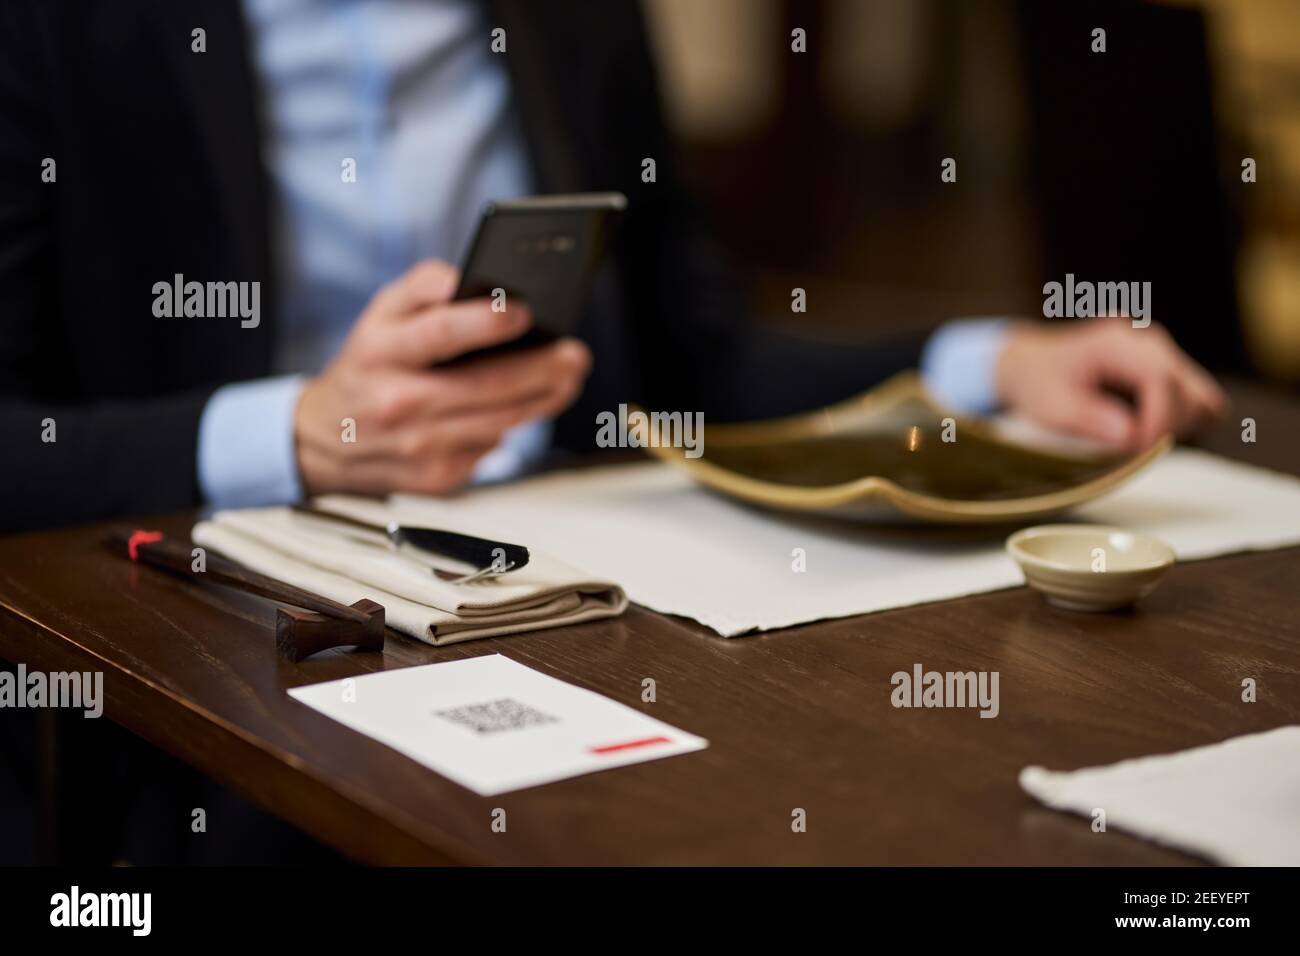 Foto sfocata ritagliata dell'uomo in tuta che tiene lo smartphone mentre seduto al tavolo del ristorante Foto Stock